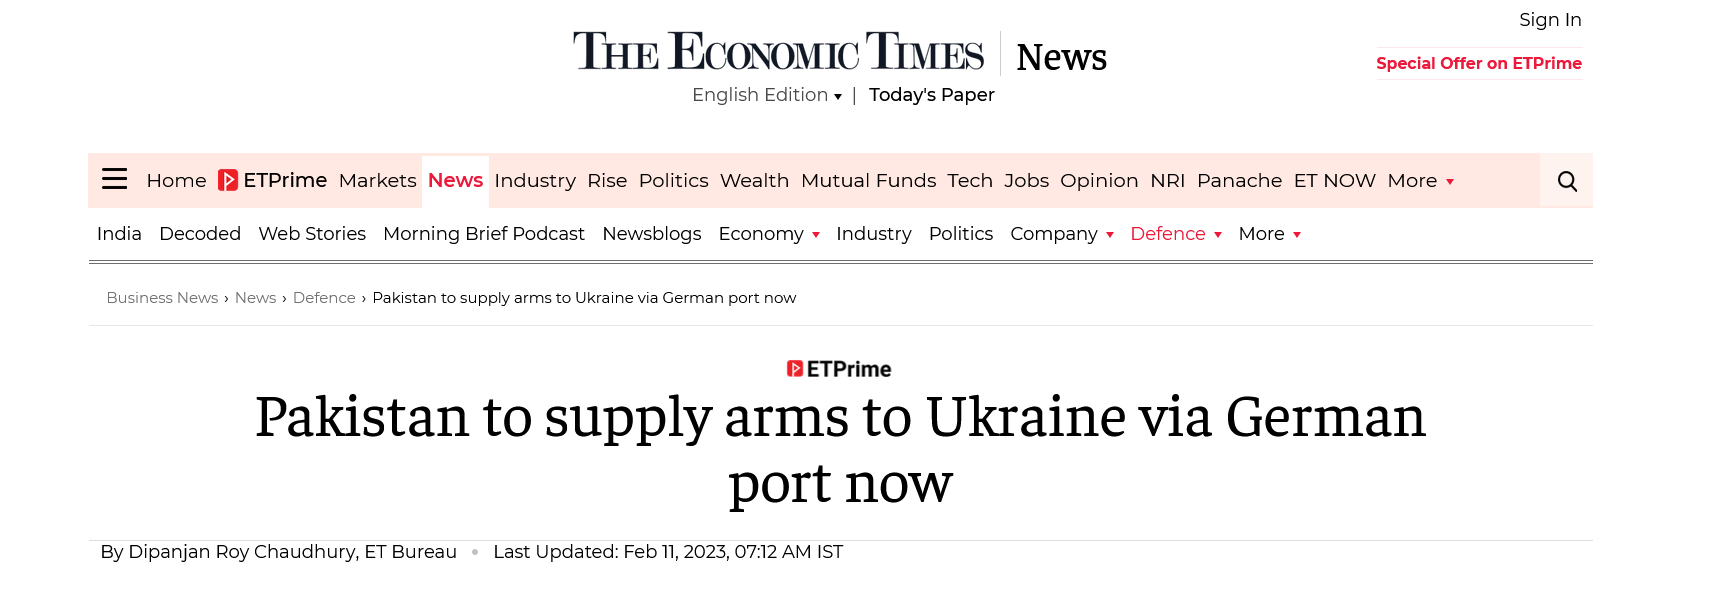 Пакистан будет поставлять оружие Украине через немецкий порт